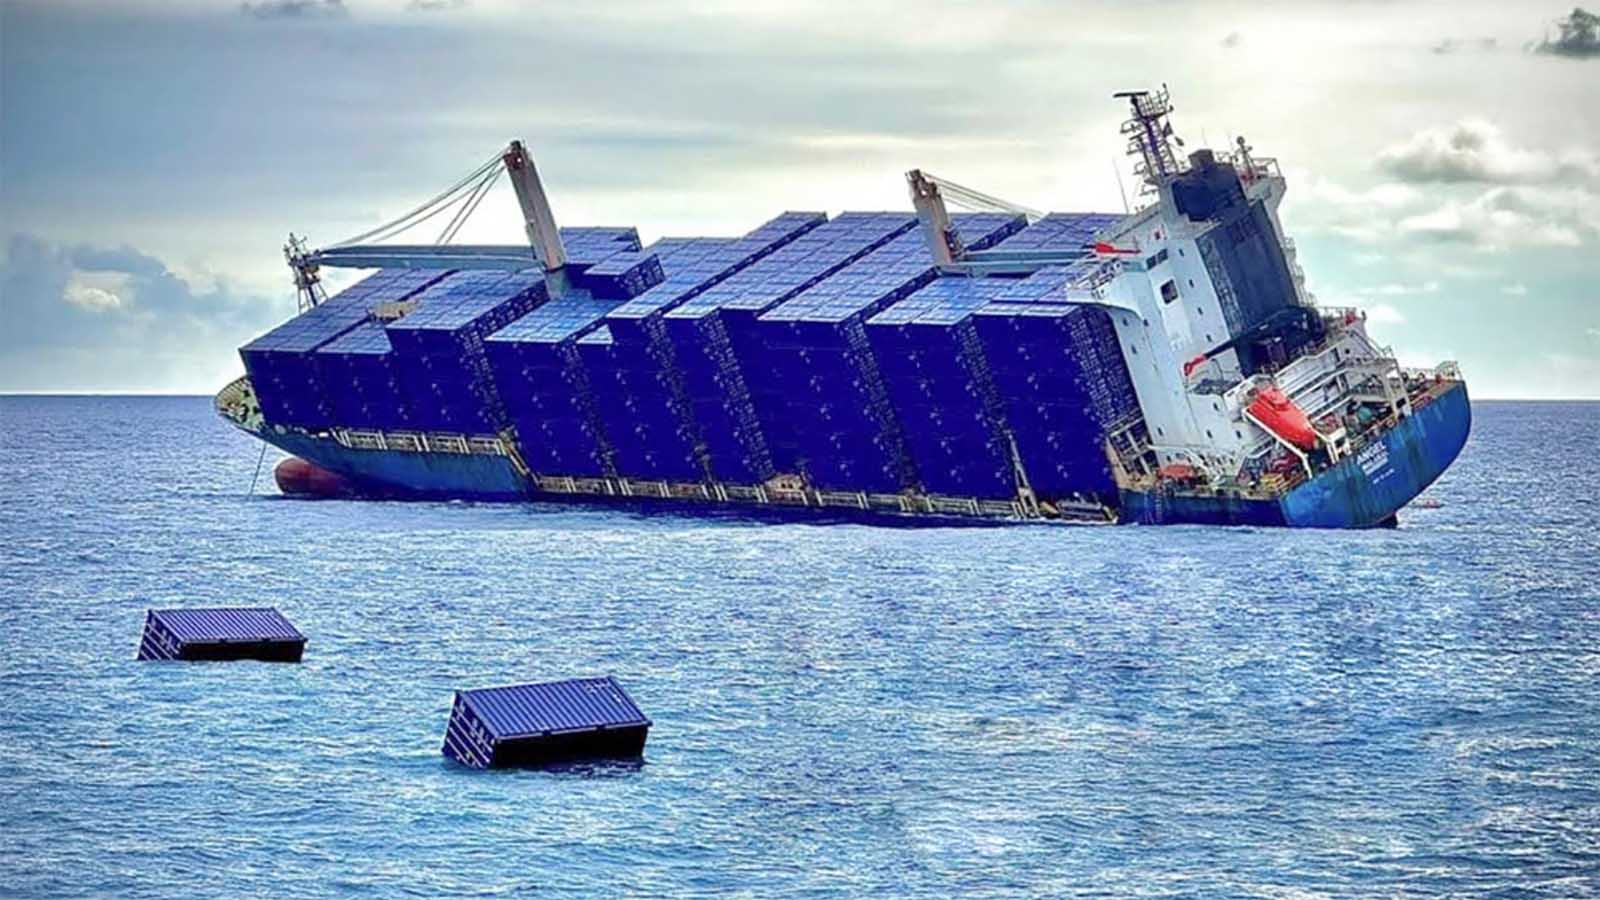 Här förlorar gigantiska container-fartyget kontrollen